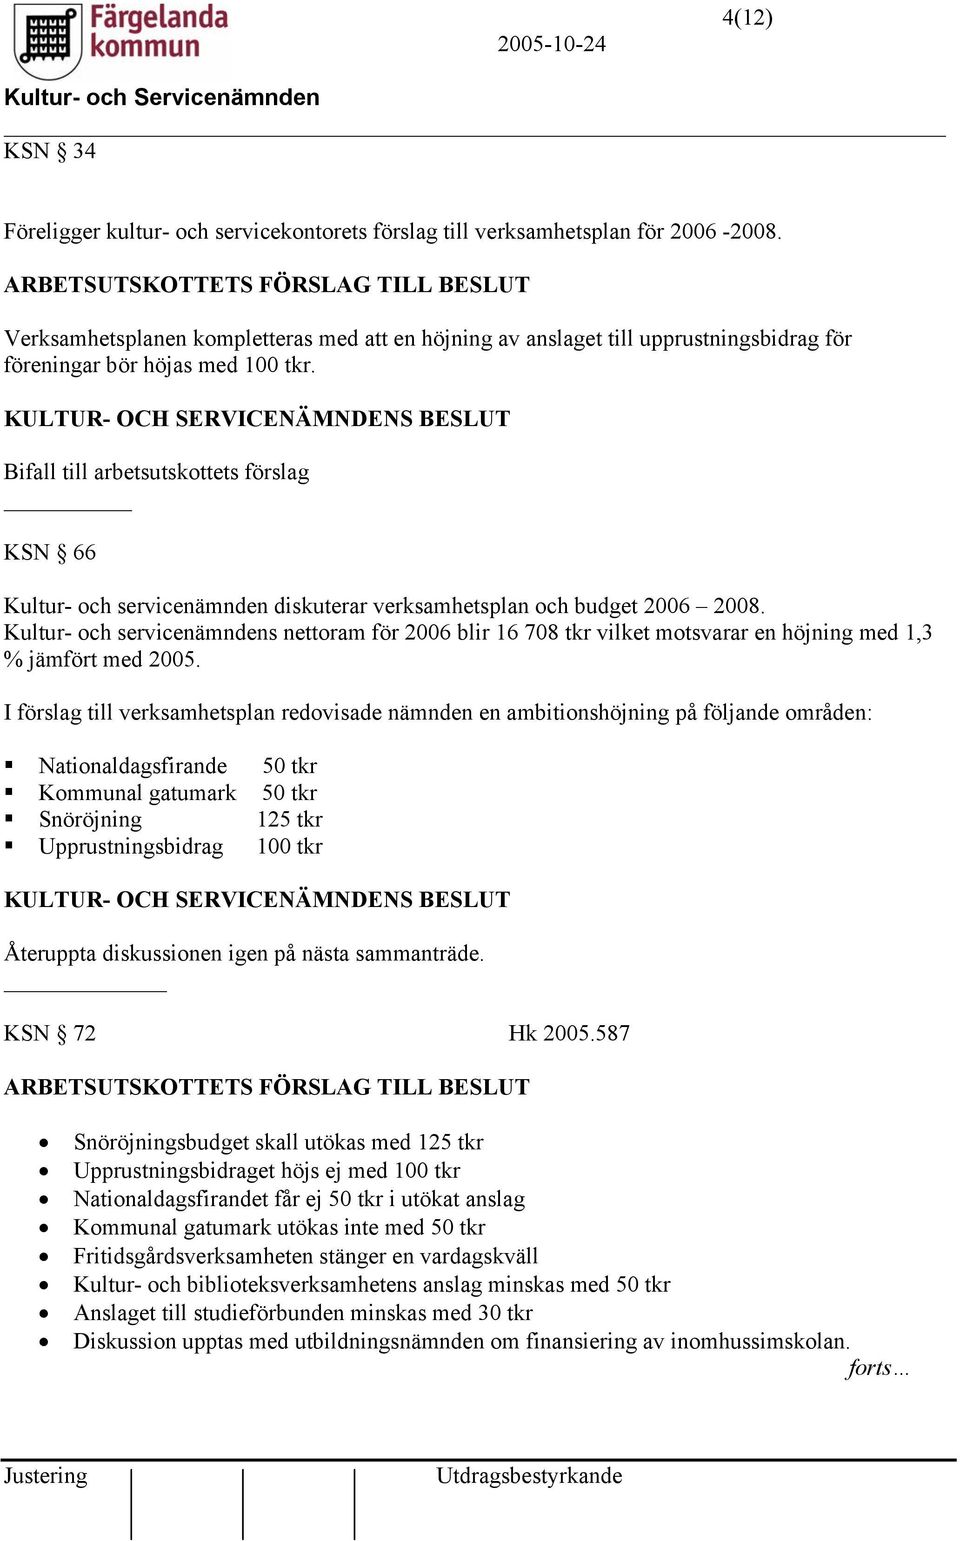 KSN 66 Kultur- och servicenämnden diskuterar verksamhetsplan och budget 2006 2008. Kultur- och servicenämndens nettoram för 2006 blir 16 708 tkr vilket motsvarar en höjning med 1,3 % jämfört med 2005.